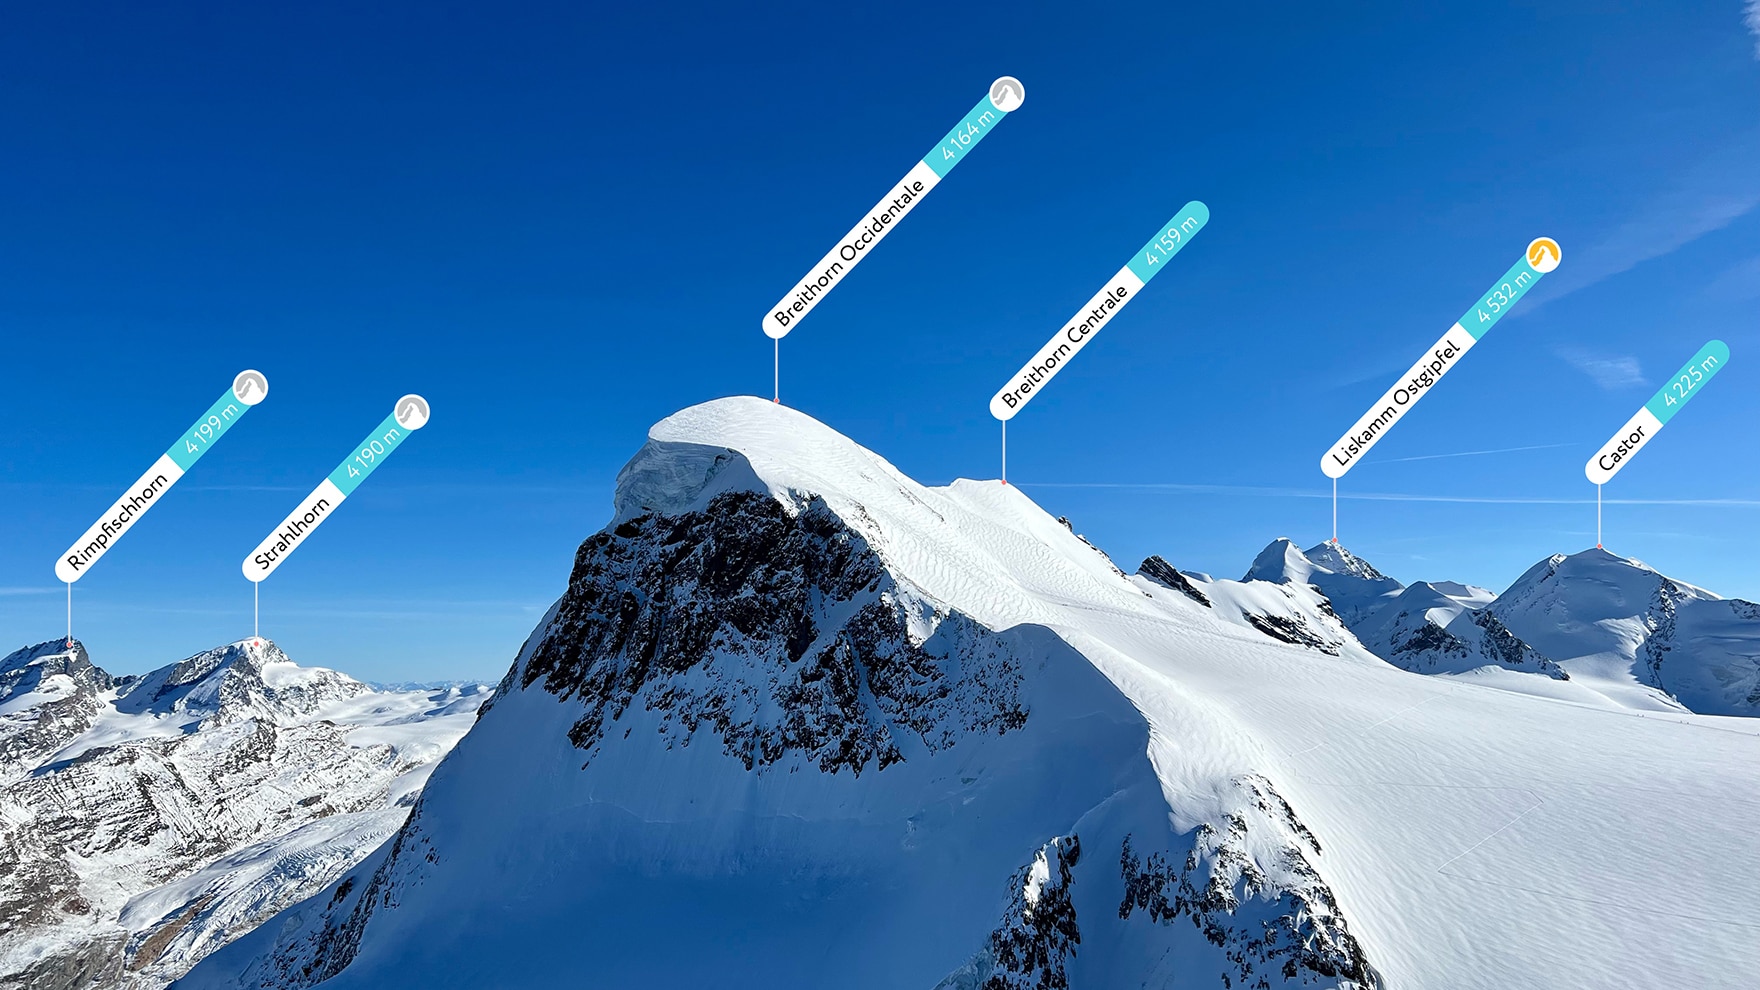 Von den hochalpinen Gipfeln der Schweiz bis zu den abgelegenen Regionen Alaskas, PeakVisor deckt alle großen und kleinen Bergketten der Welt ab. 